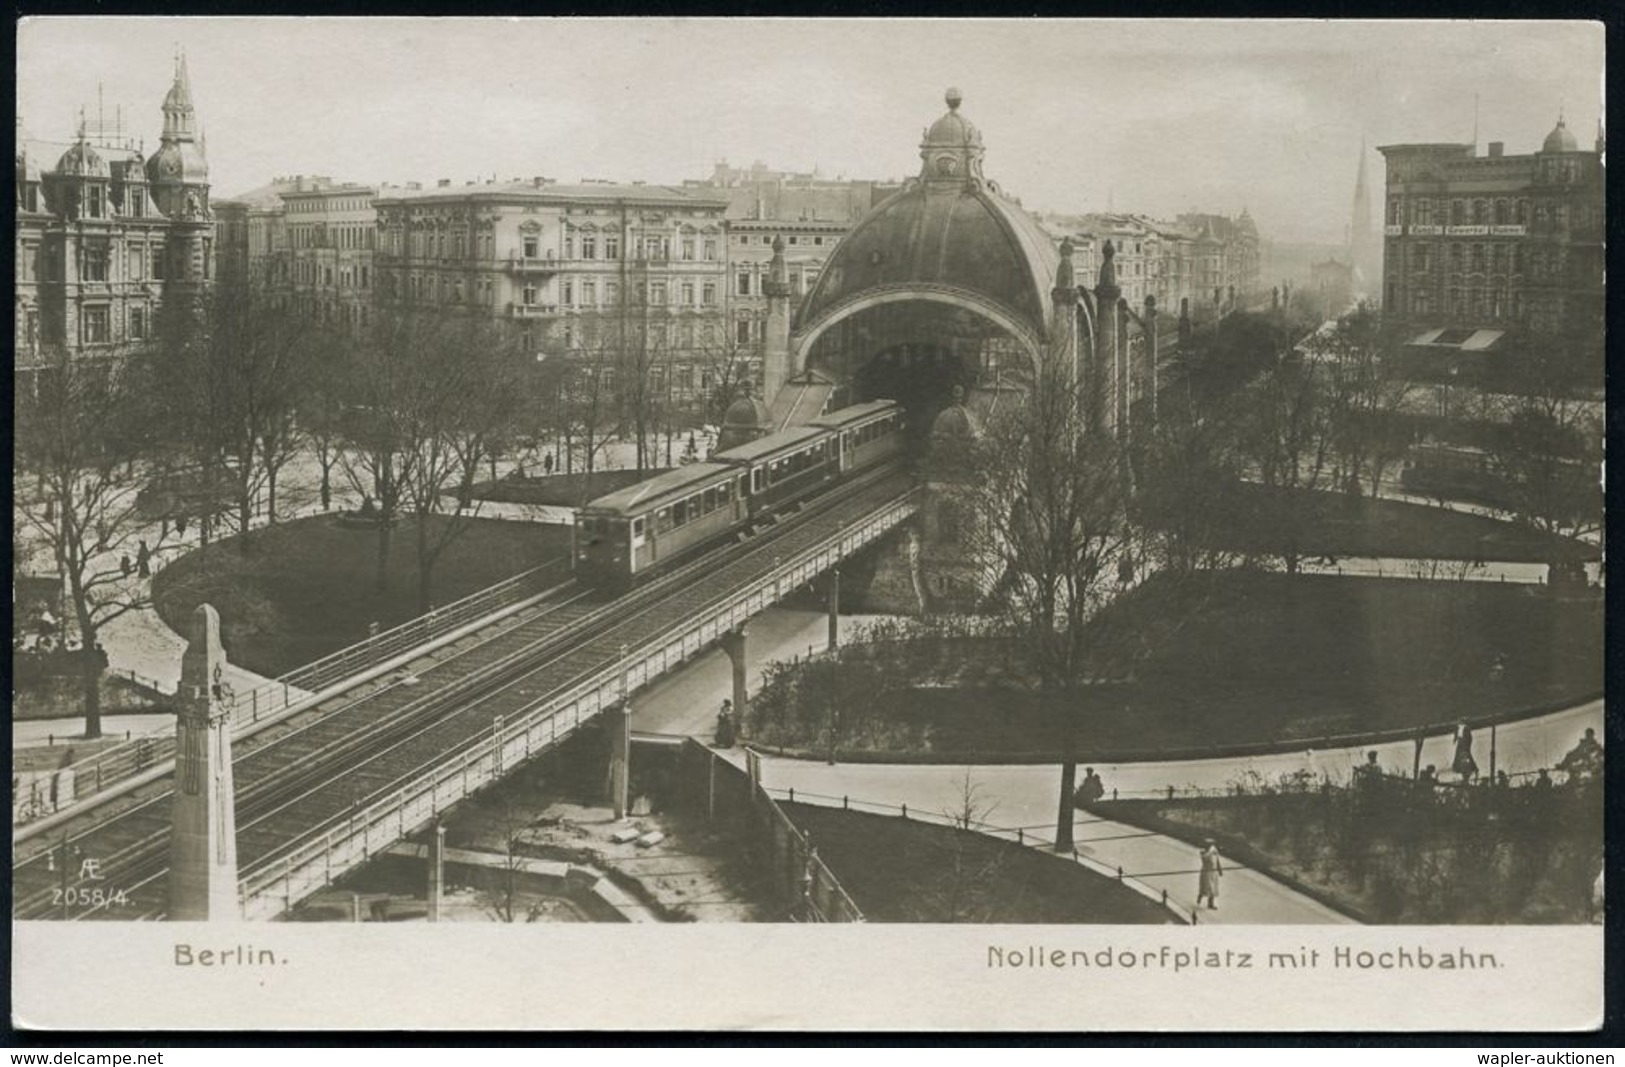 UNTERGRUNDBAHN /U-BAHN : Berlin-Schöneberg 1900/12 U-Bahnhof Nollendorfplatz, 7 verschiedene s/w.-Ak., teils gebr., teil